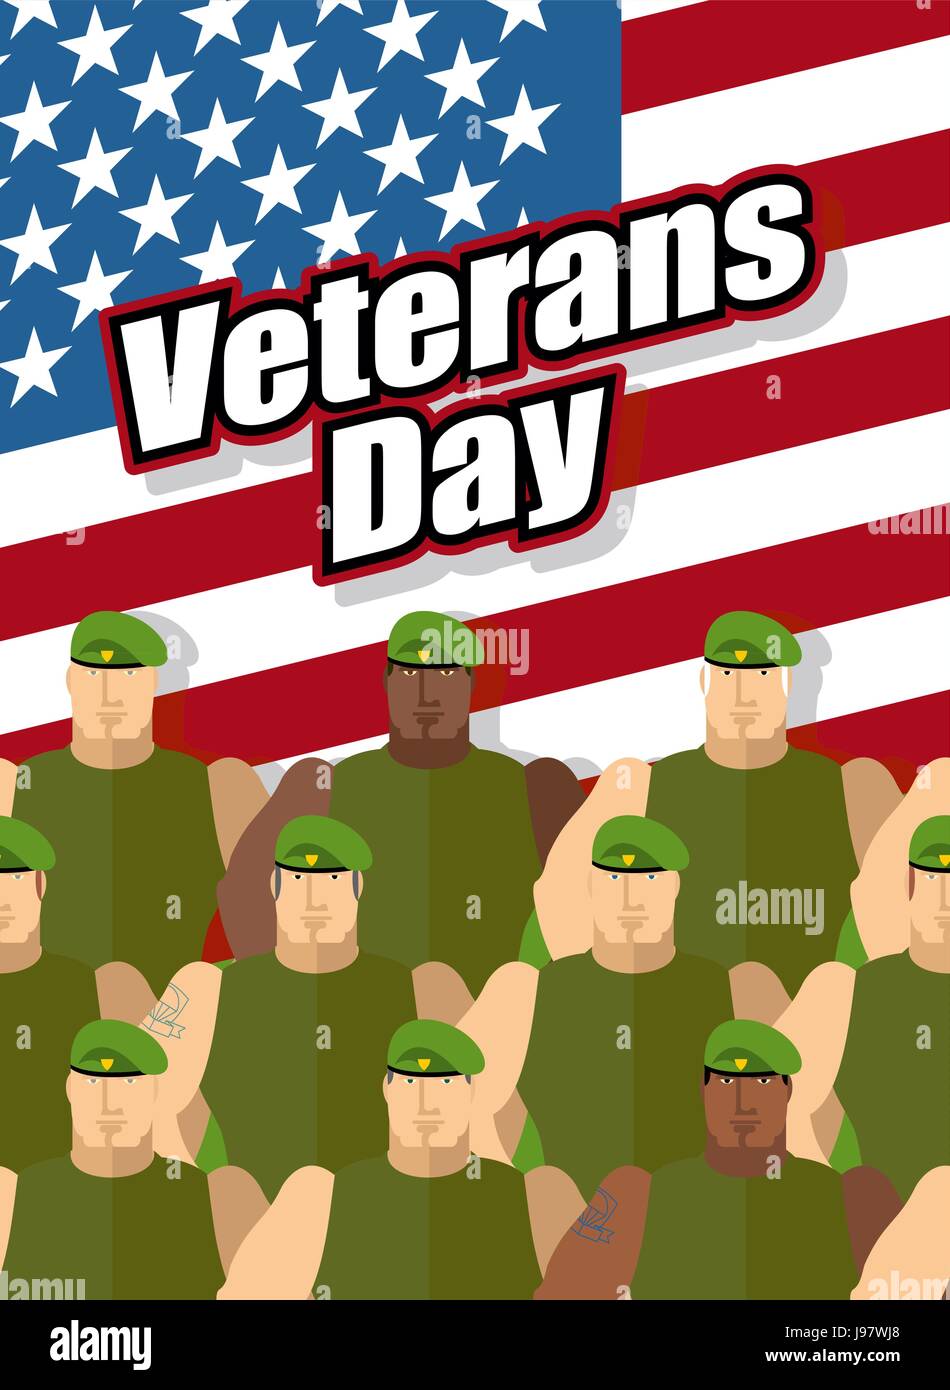 Journée des anciens combattants. Les soldats américains sont sur fond de drapeau des États-Unis. Vector illustration patriotique pour la fête nationale. Illustration de Vecteur